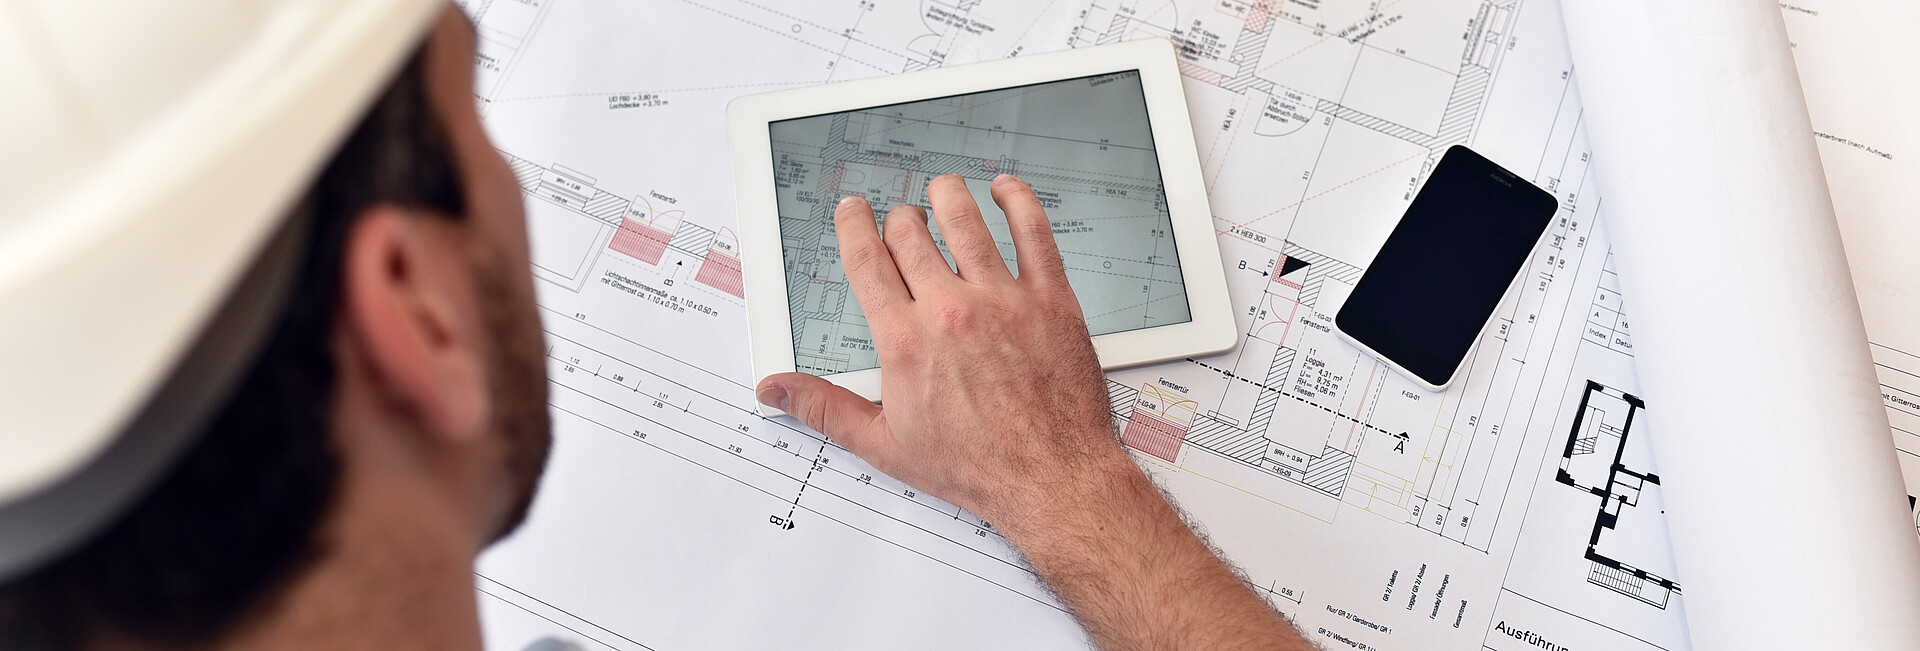 Ein Bauzeichner sitzt mit Tablet, handy und Zeichenutensilien an einem Plan